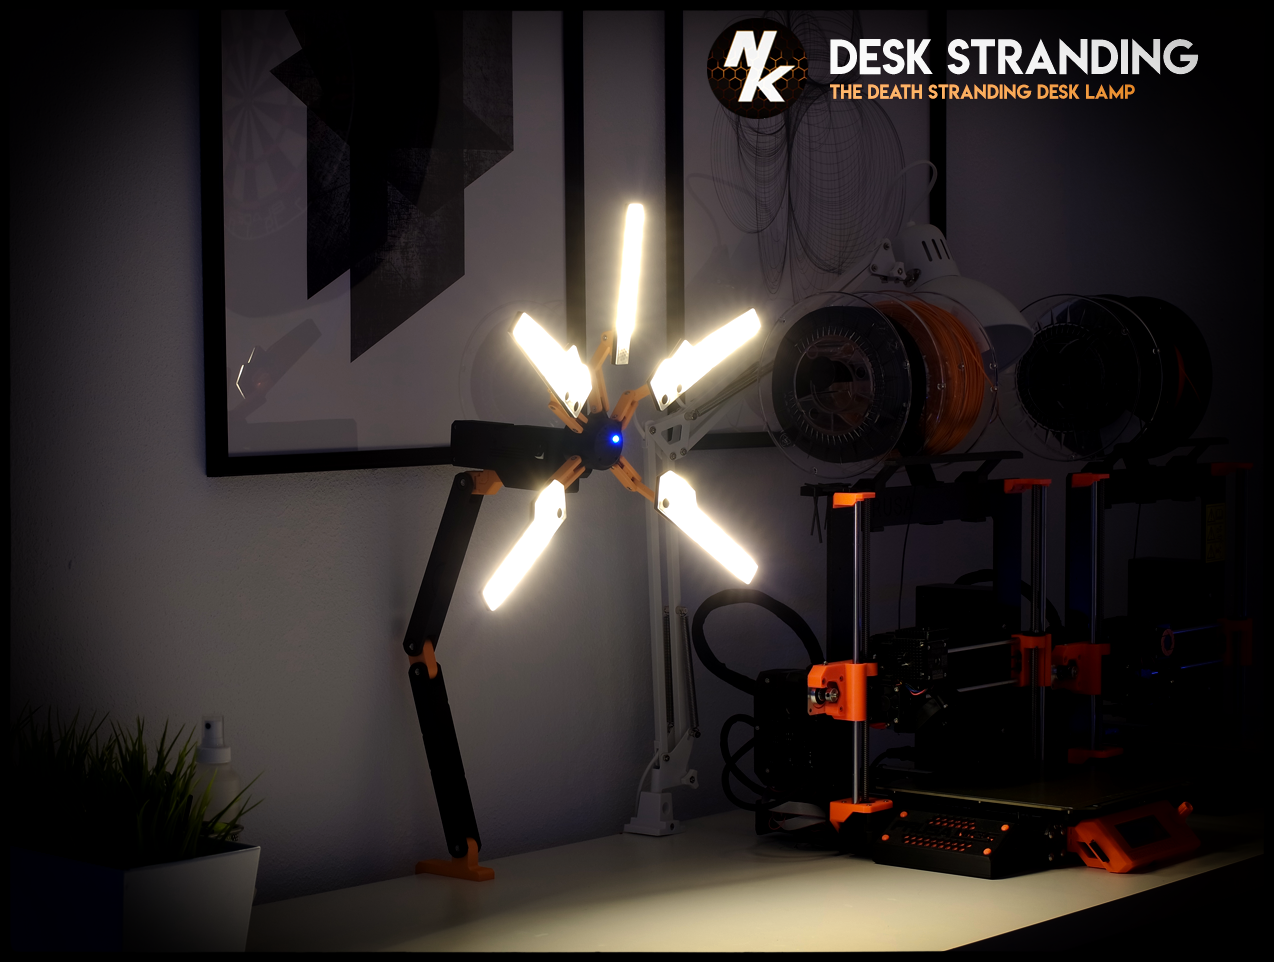 Desk Stranding - The Death Stranding Desk Lamp by Nils Kal 